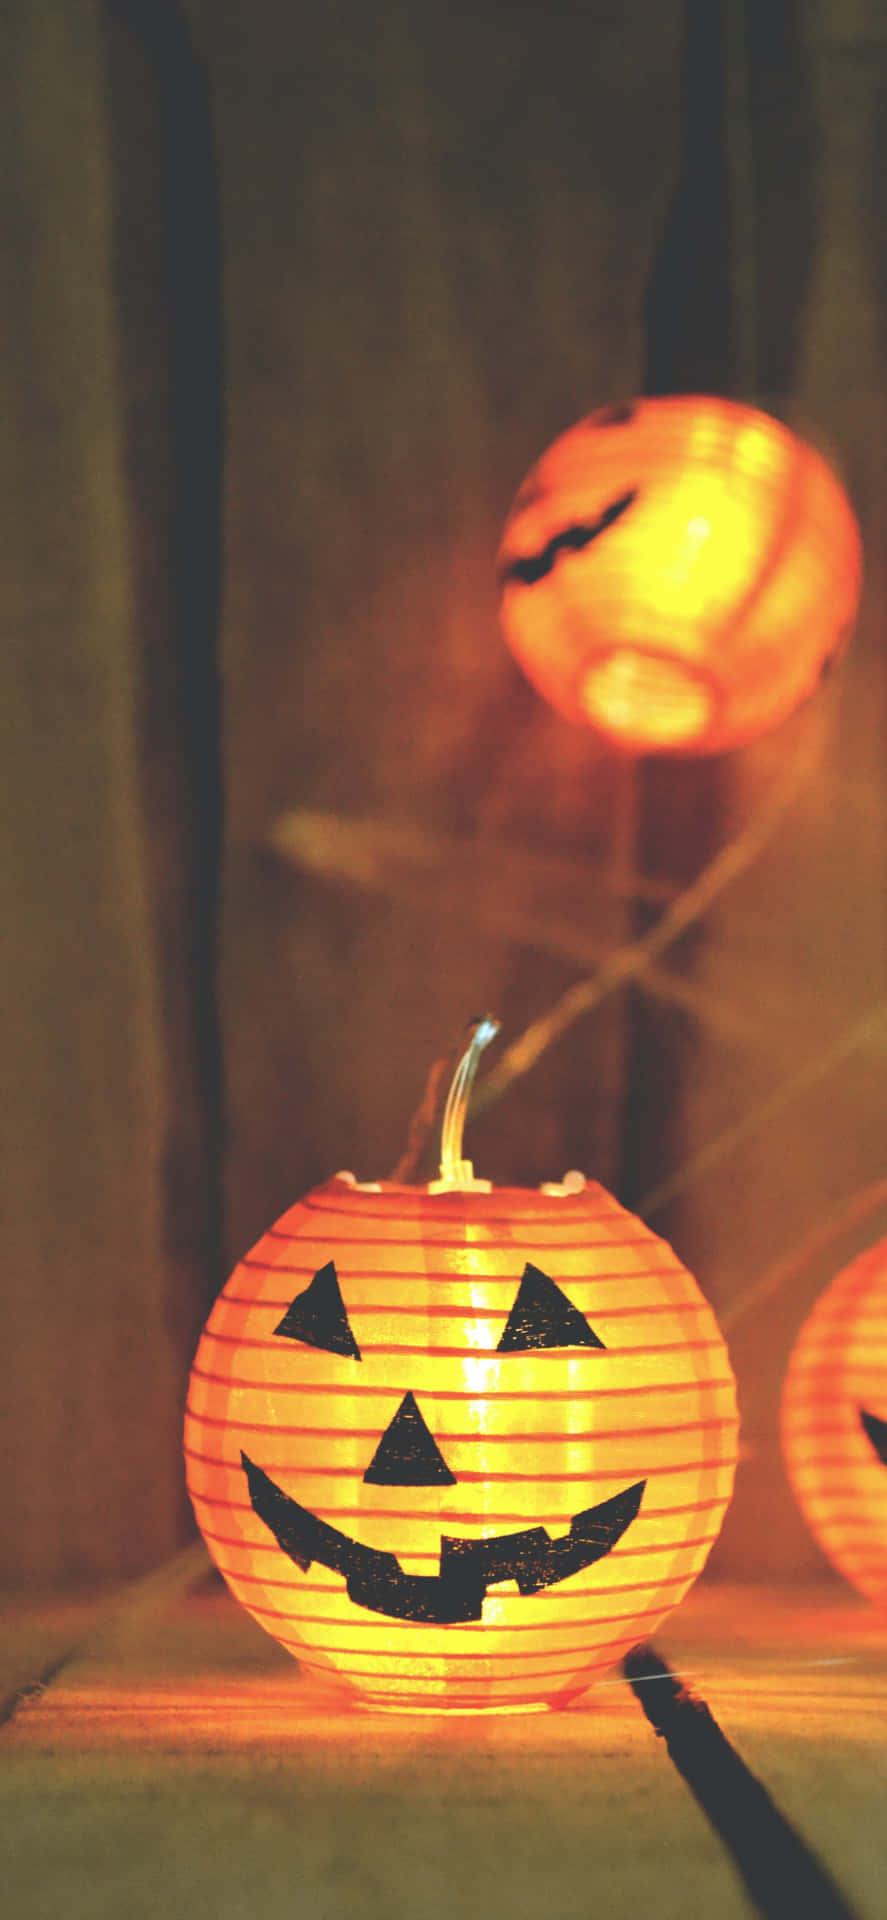 Fondode Pantalla De Halloween Para Iphone Con Una Brillante Calabaza De Jack O'lantern.